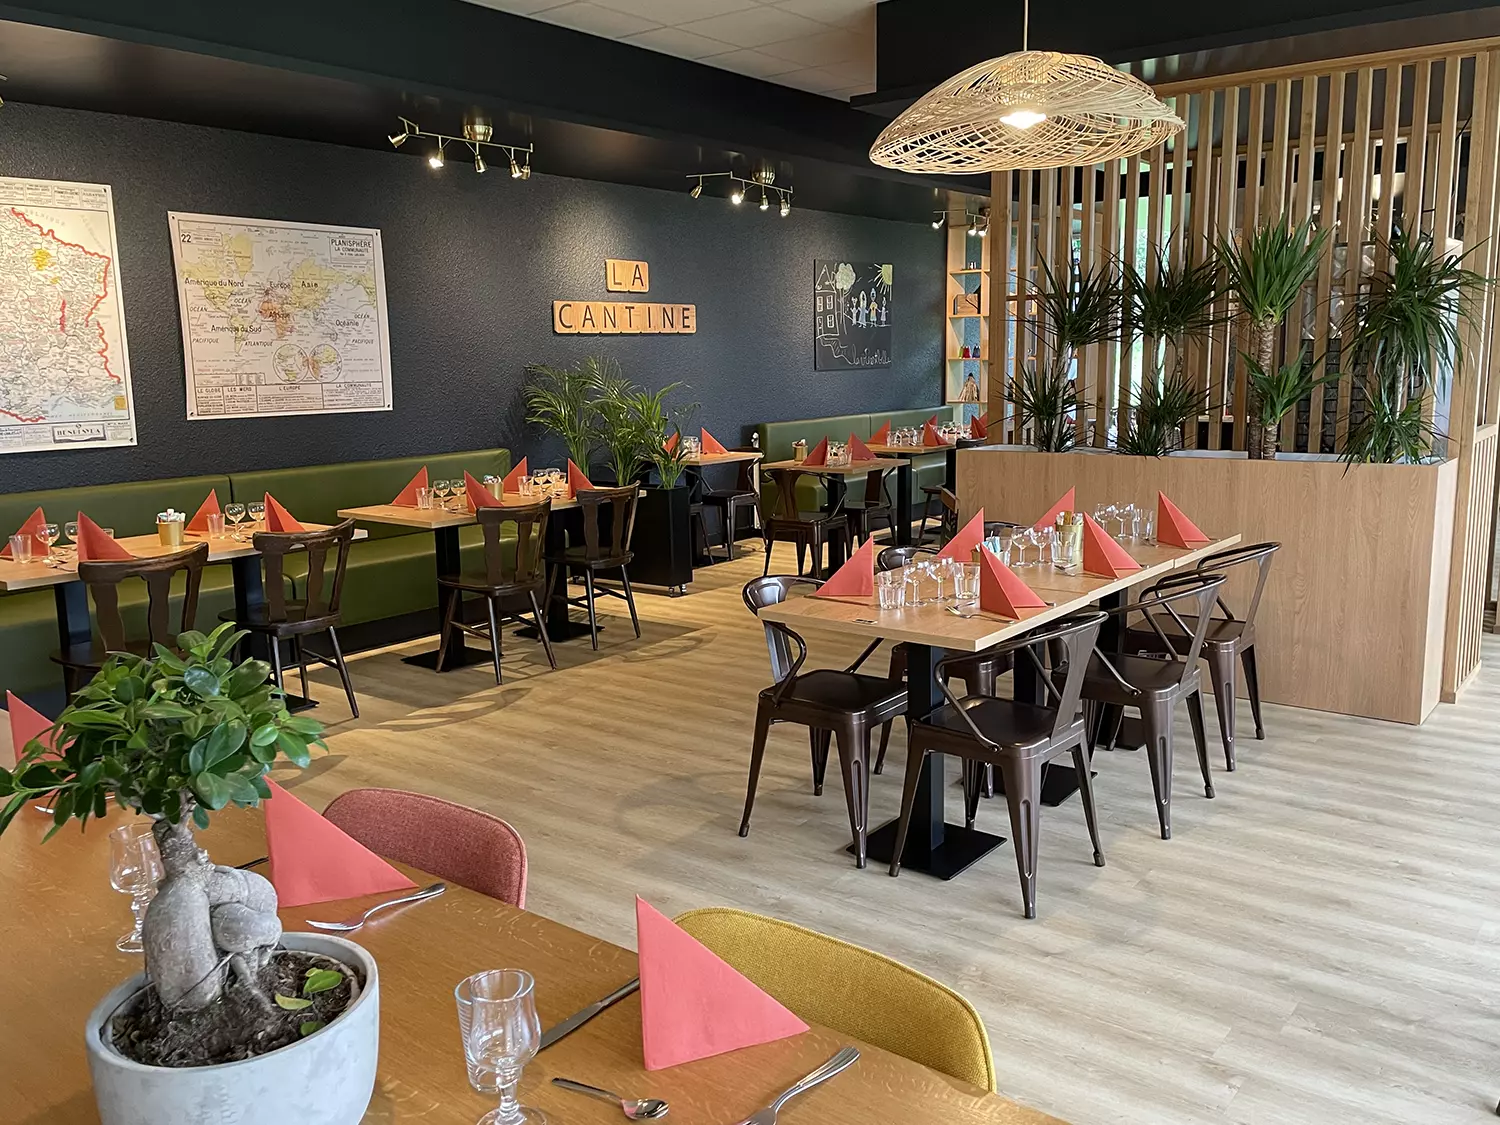 Agencement menuiserie Salle de restaurant - Menuisier agenceur Art Bois Concept Pontivy Morbihan Bretagne